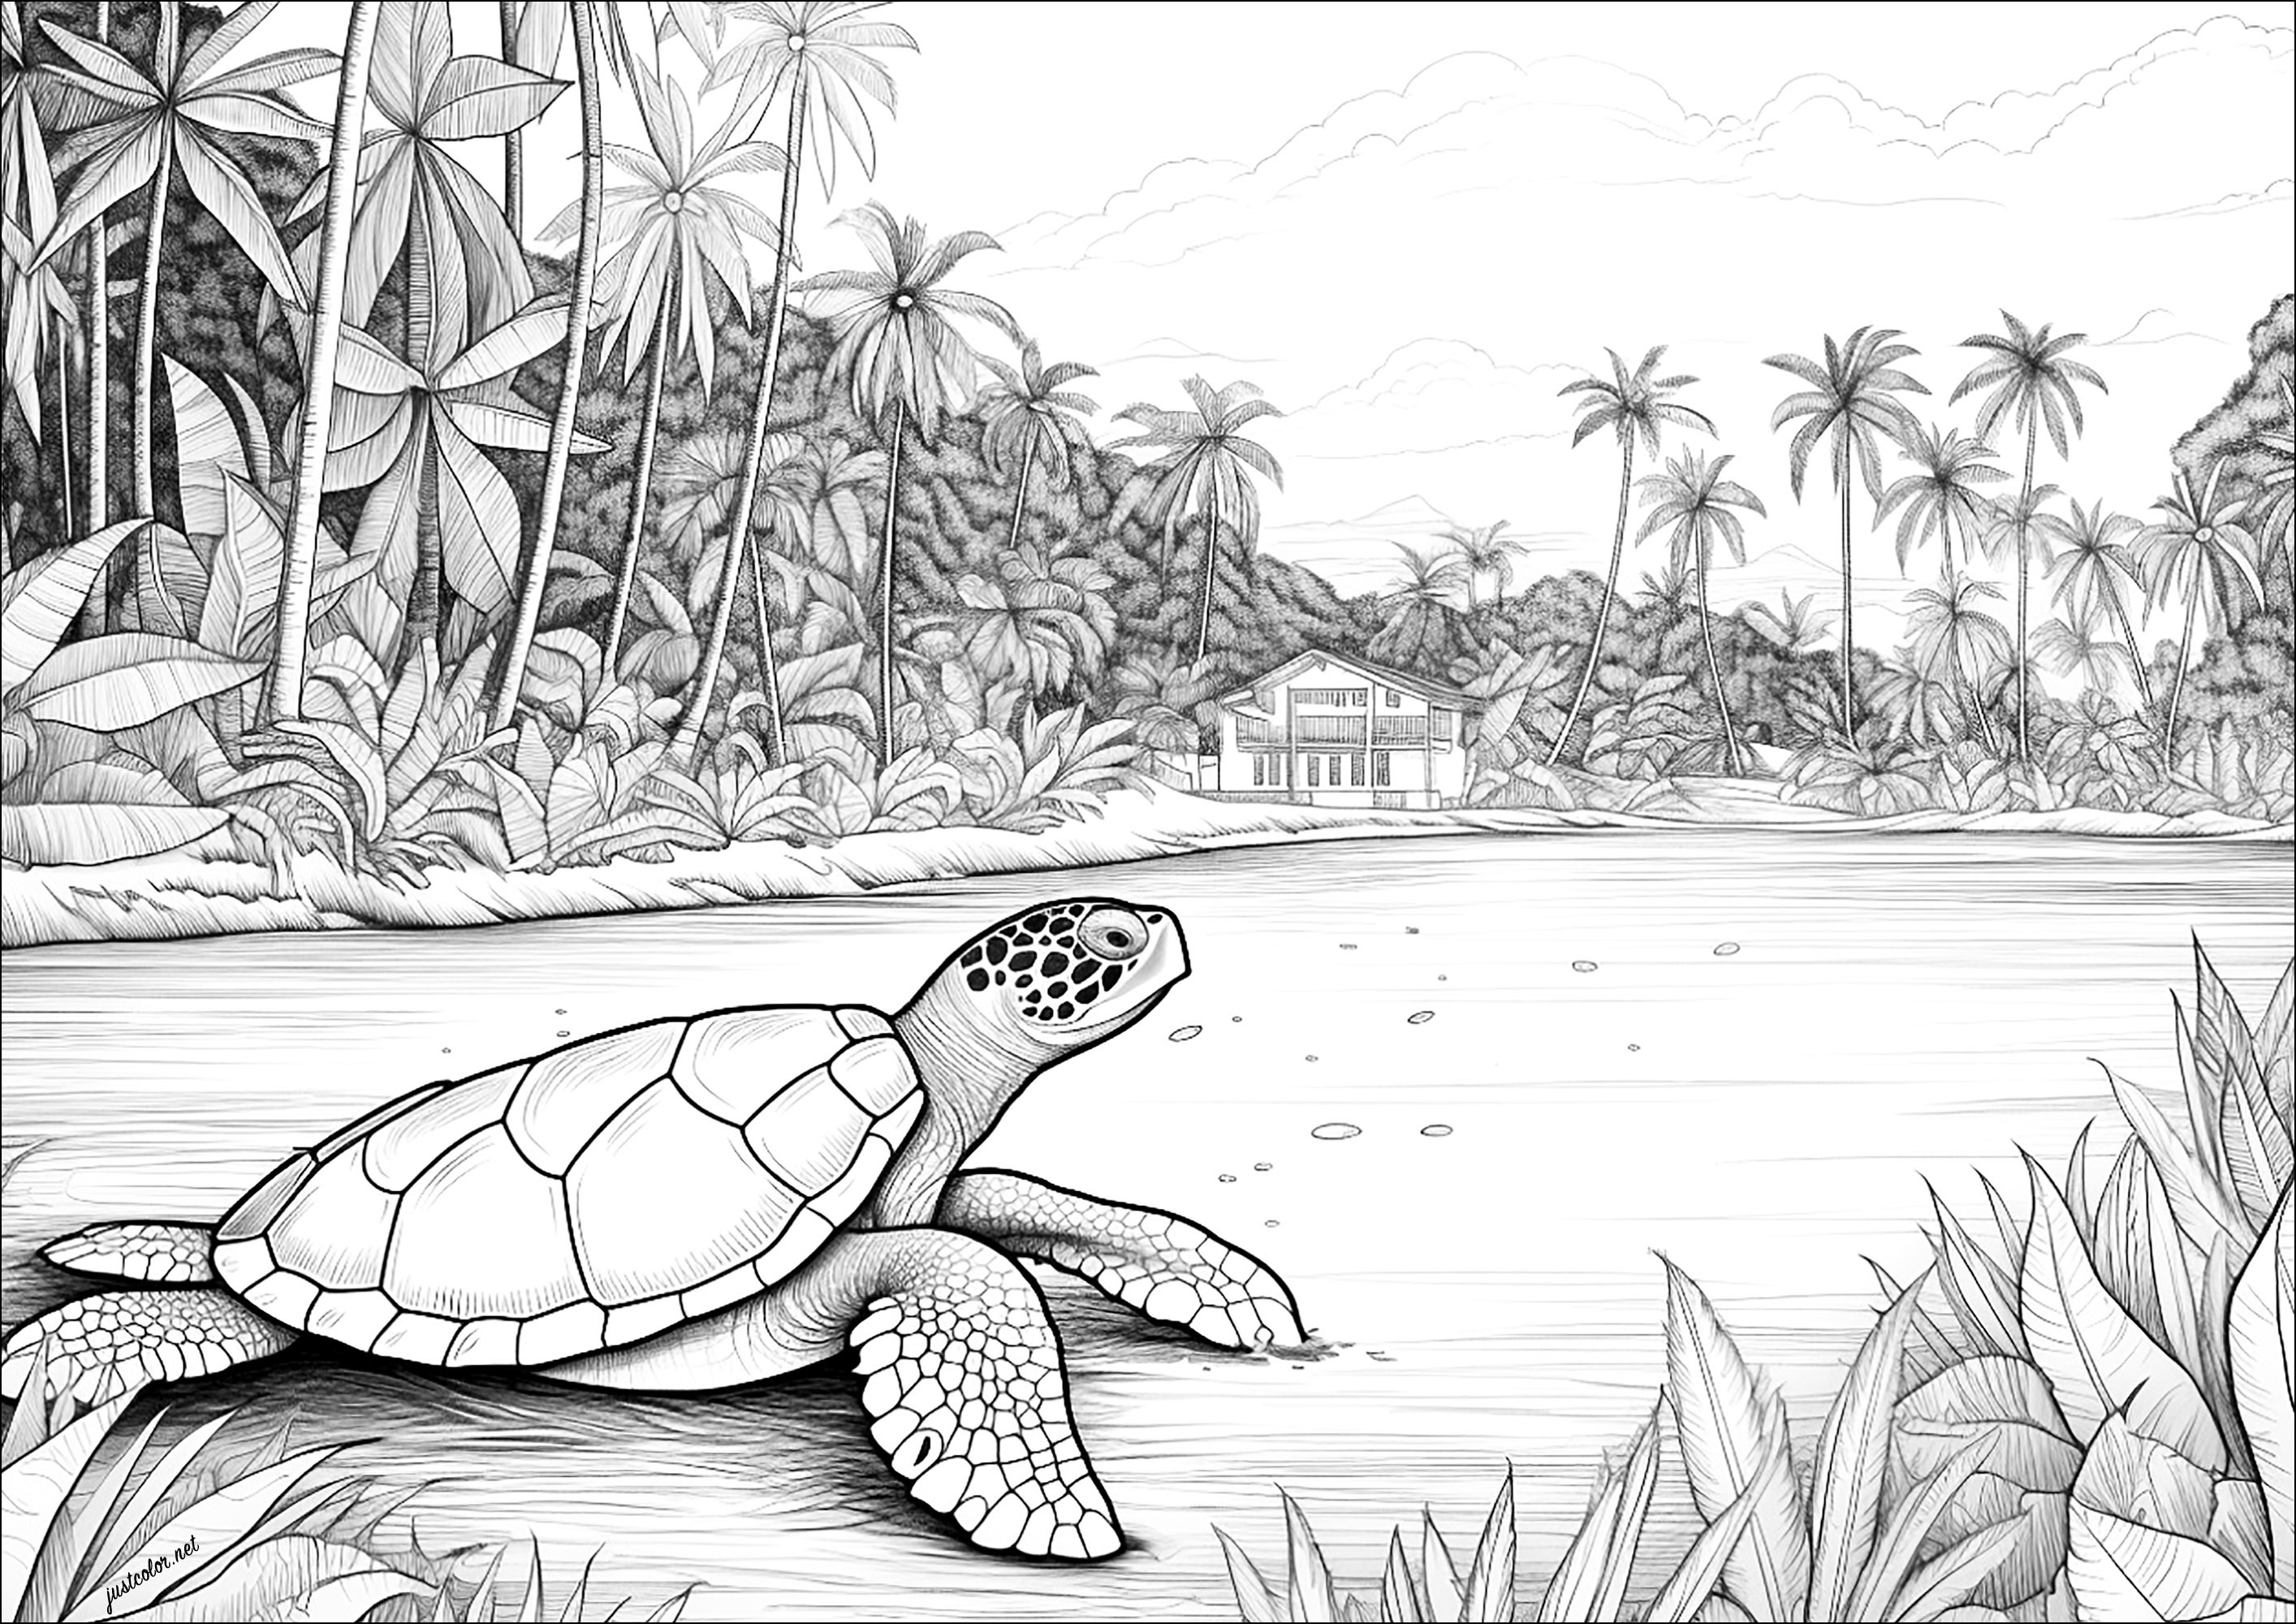 Una tortuga en la playa. Colorido complejo, realista y detallado